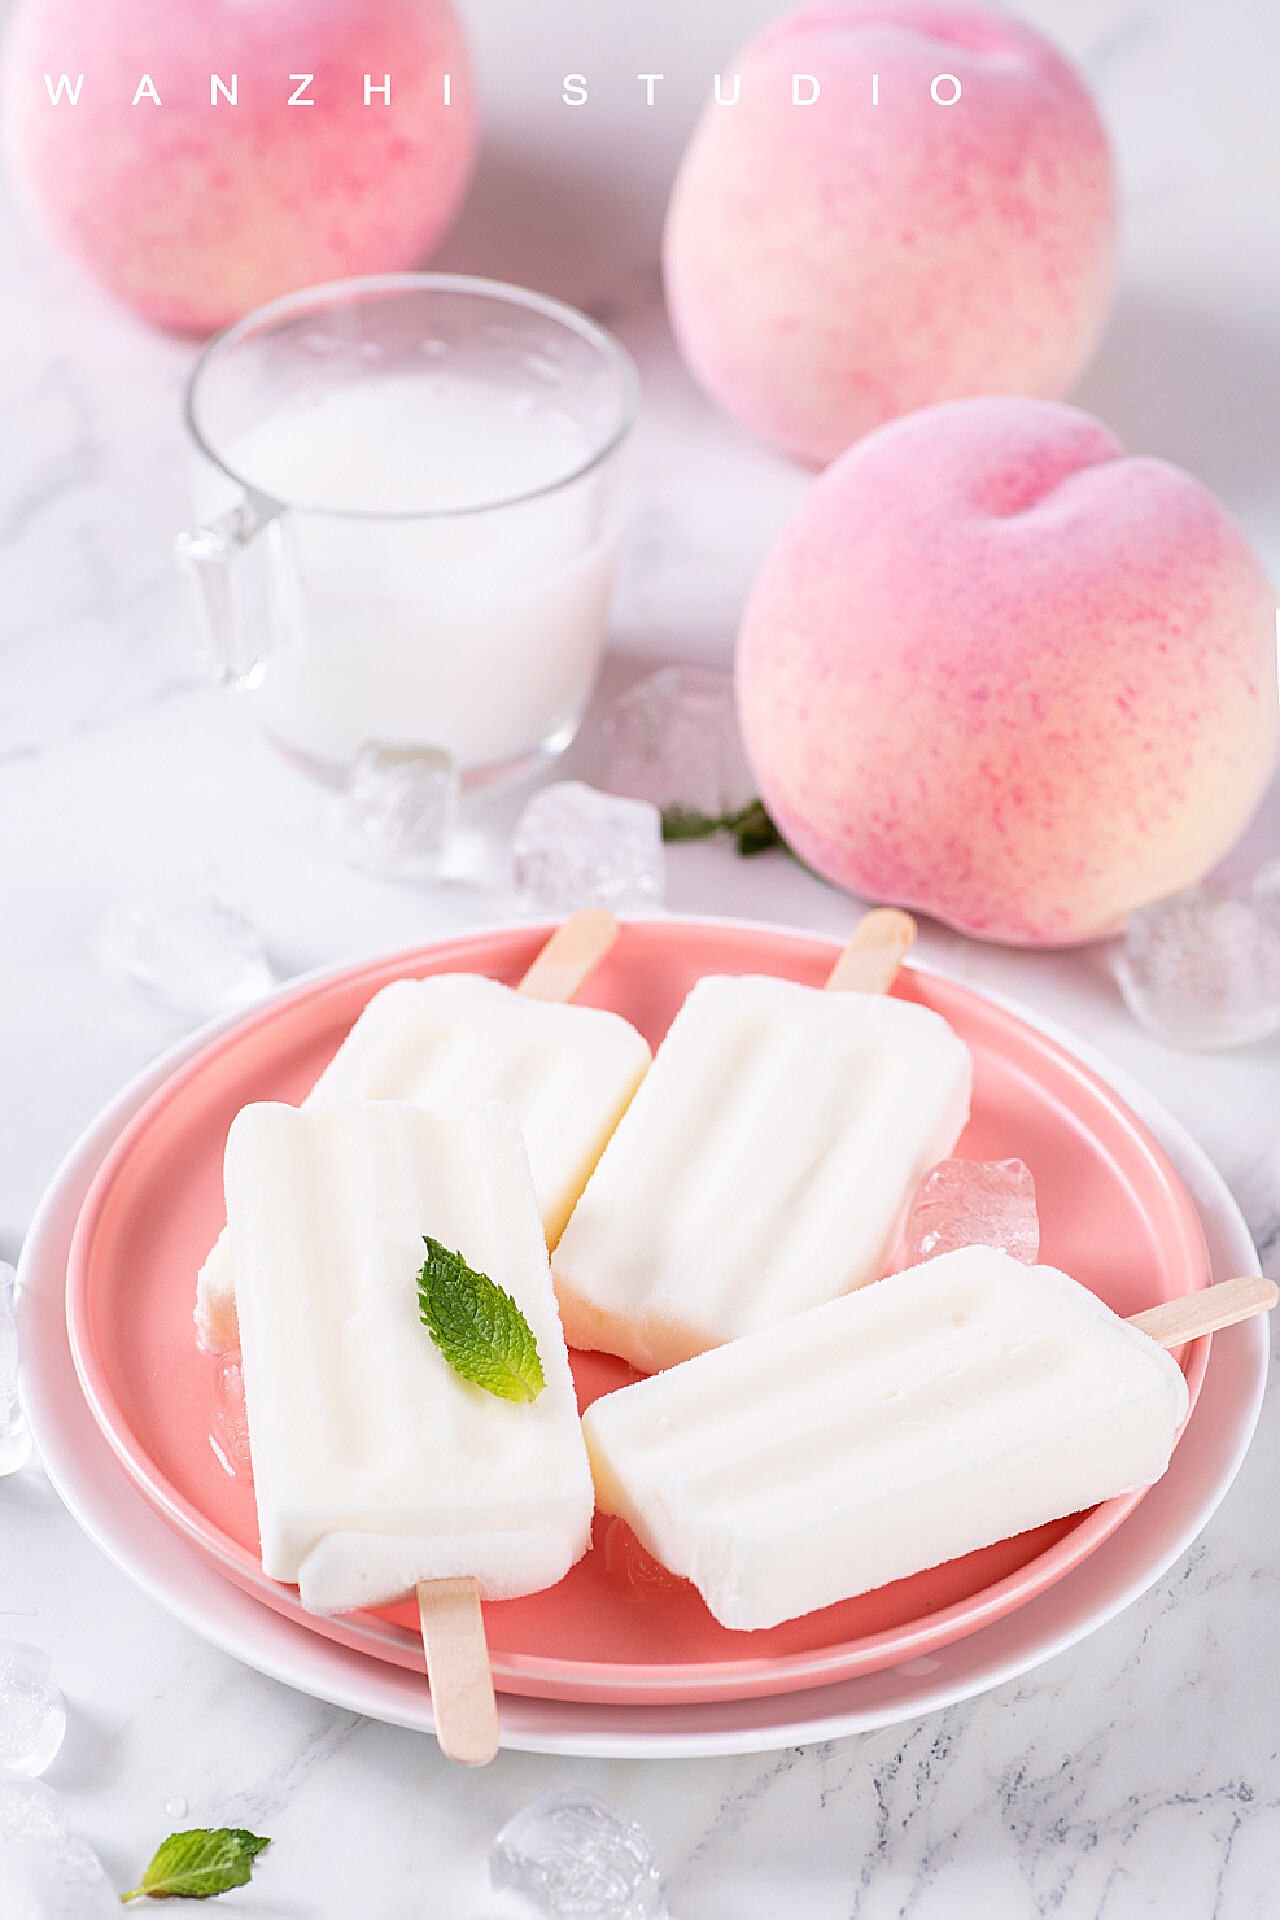 桃子酸奶 库存照片. 图片 包括有 新鲜, 产品, 饮食, 桃子, 营养, 酸奶, 健康, 果子, 有机 - 24326444